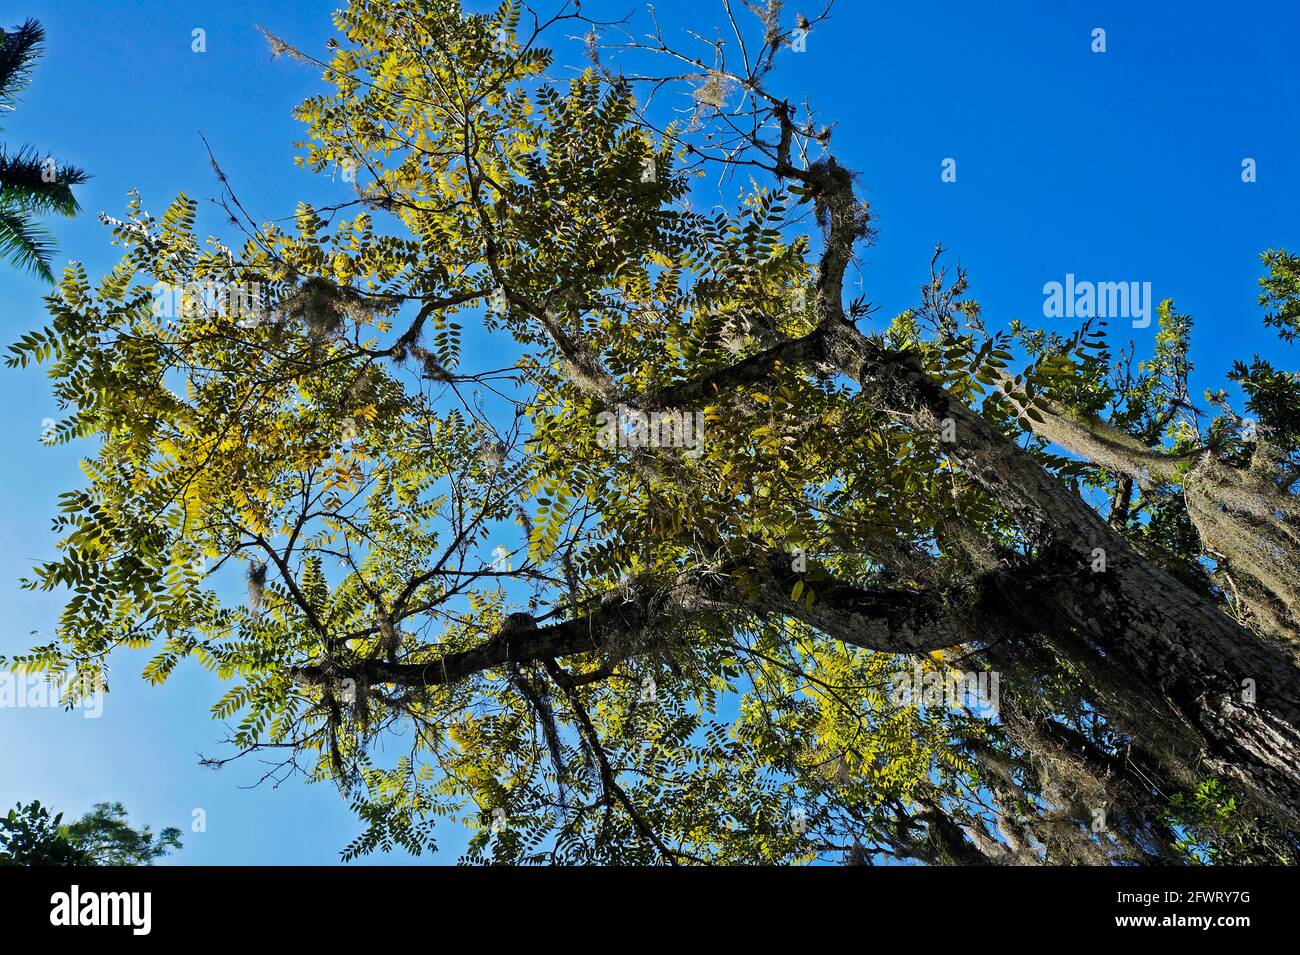 Spanish cedar or Cuban cedar (Cedrela odorata) Stock Photo